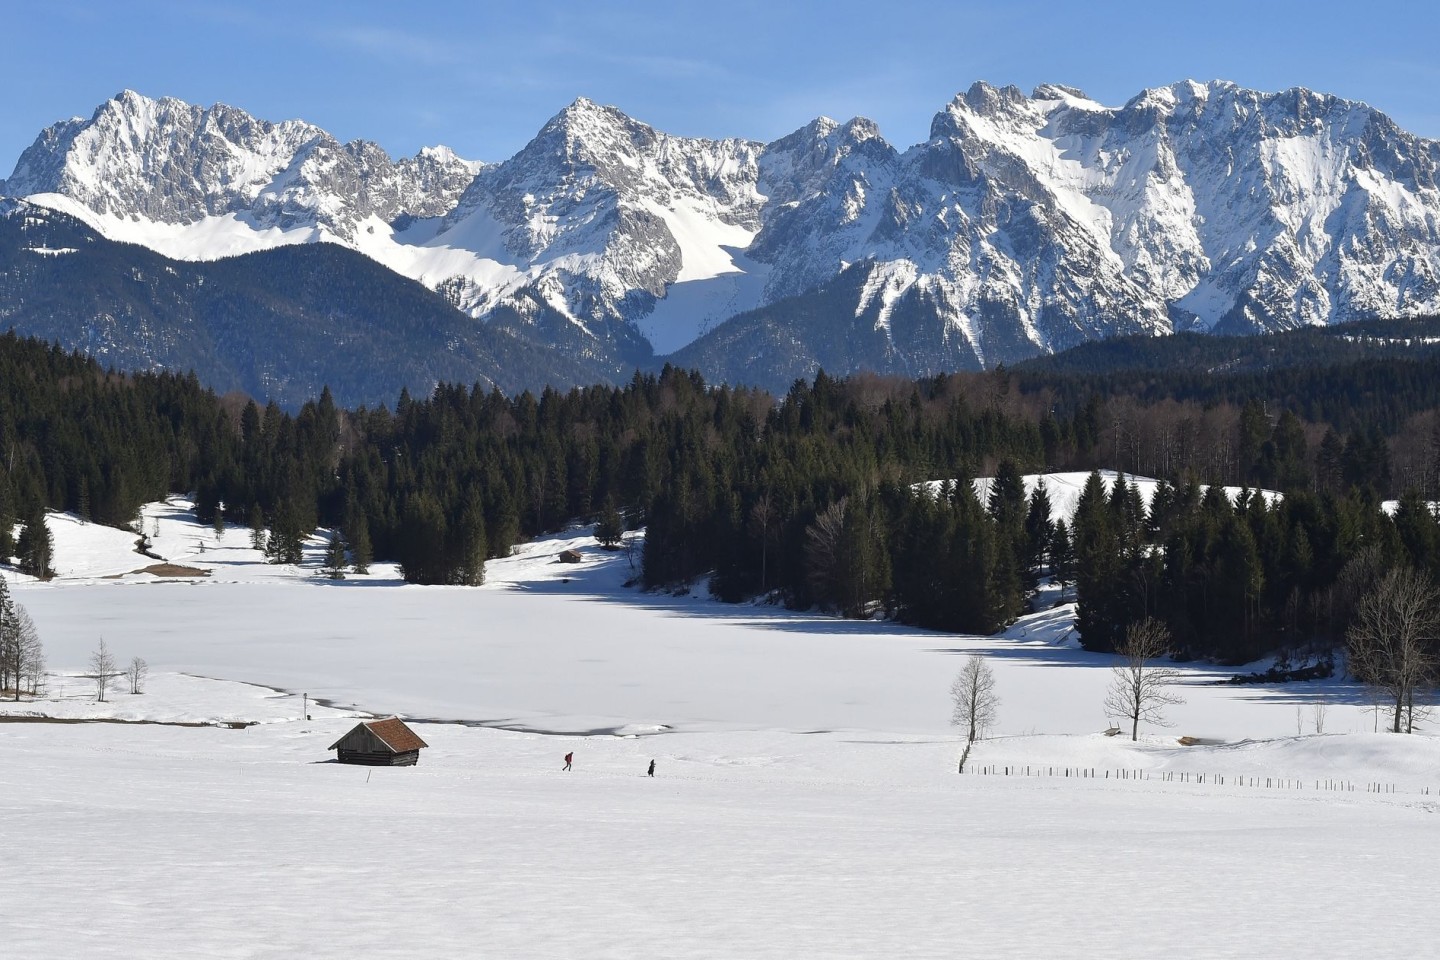 Das schneebedeckte Karwendel-Gebirge. Dort ist ein junger Wanderer verunglückt.